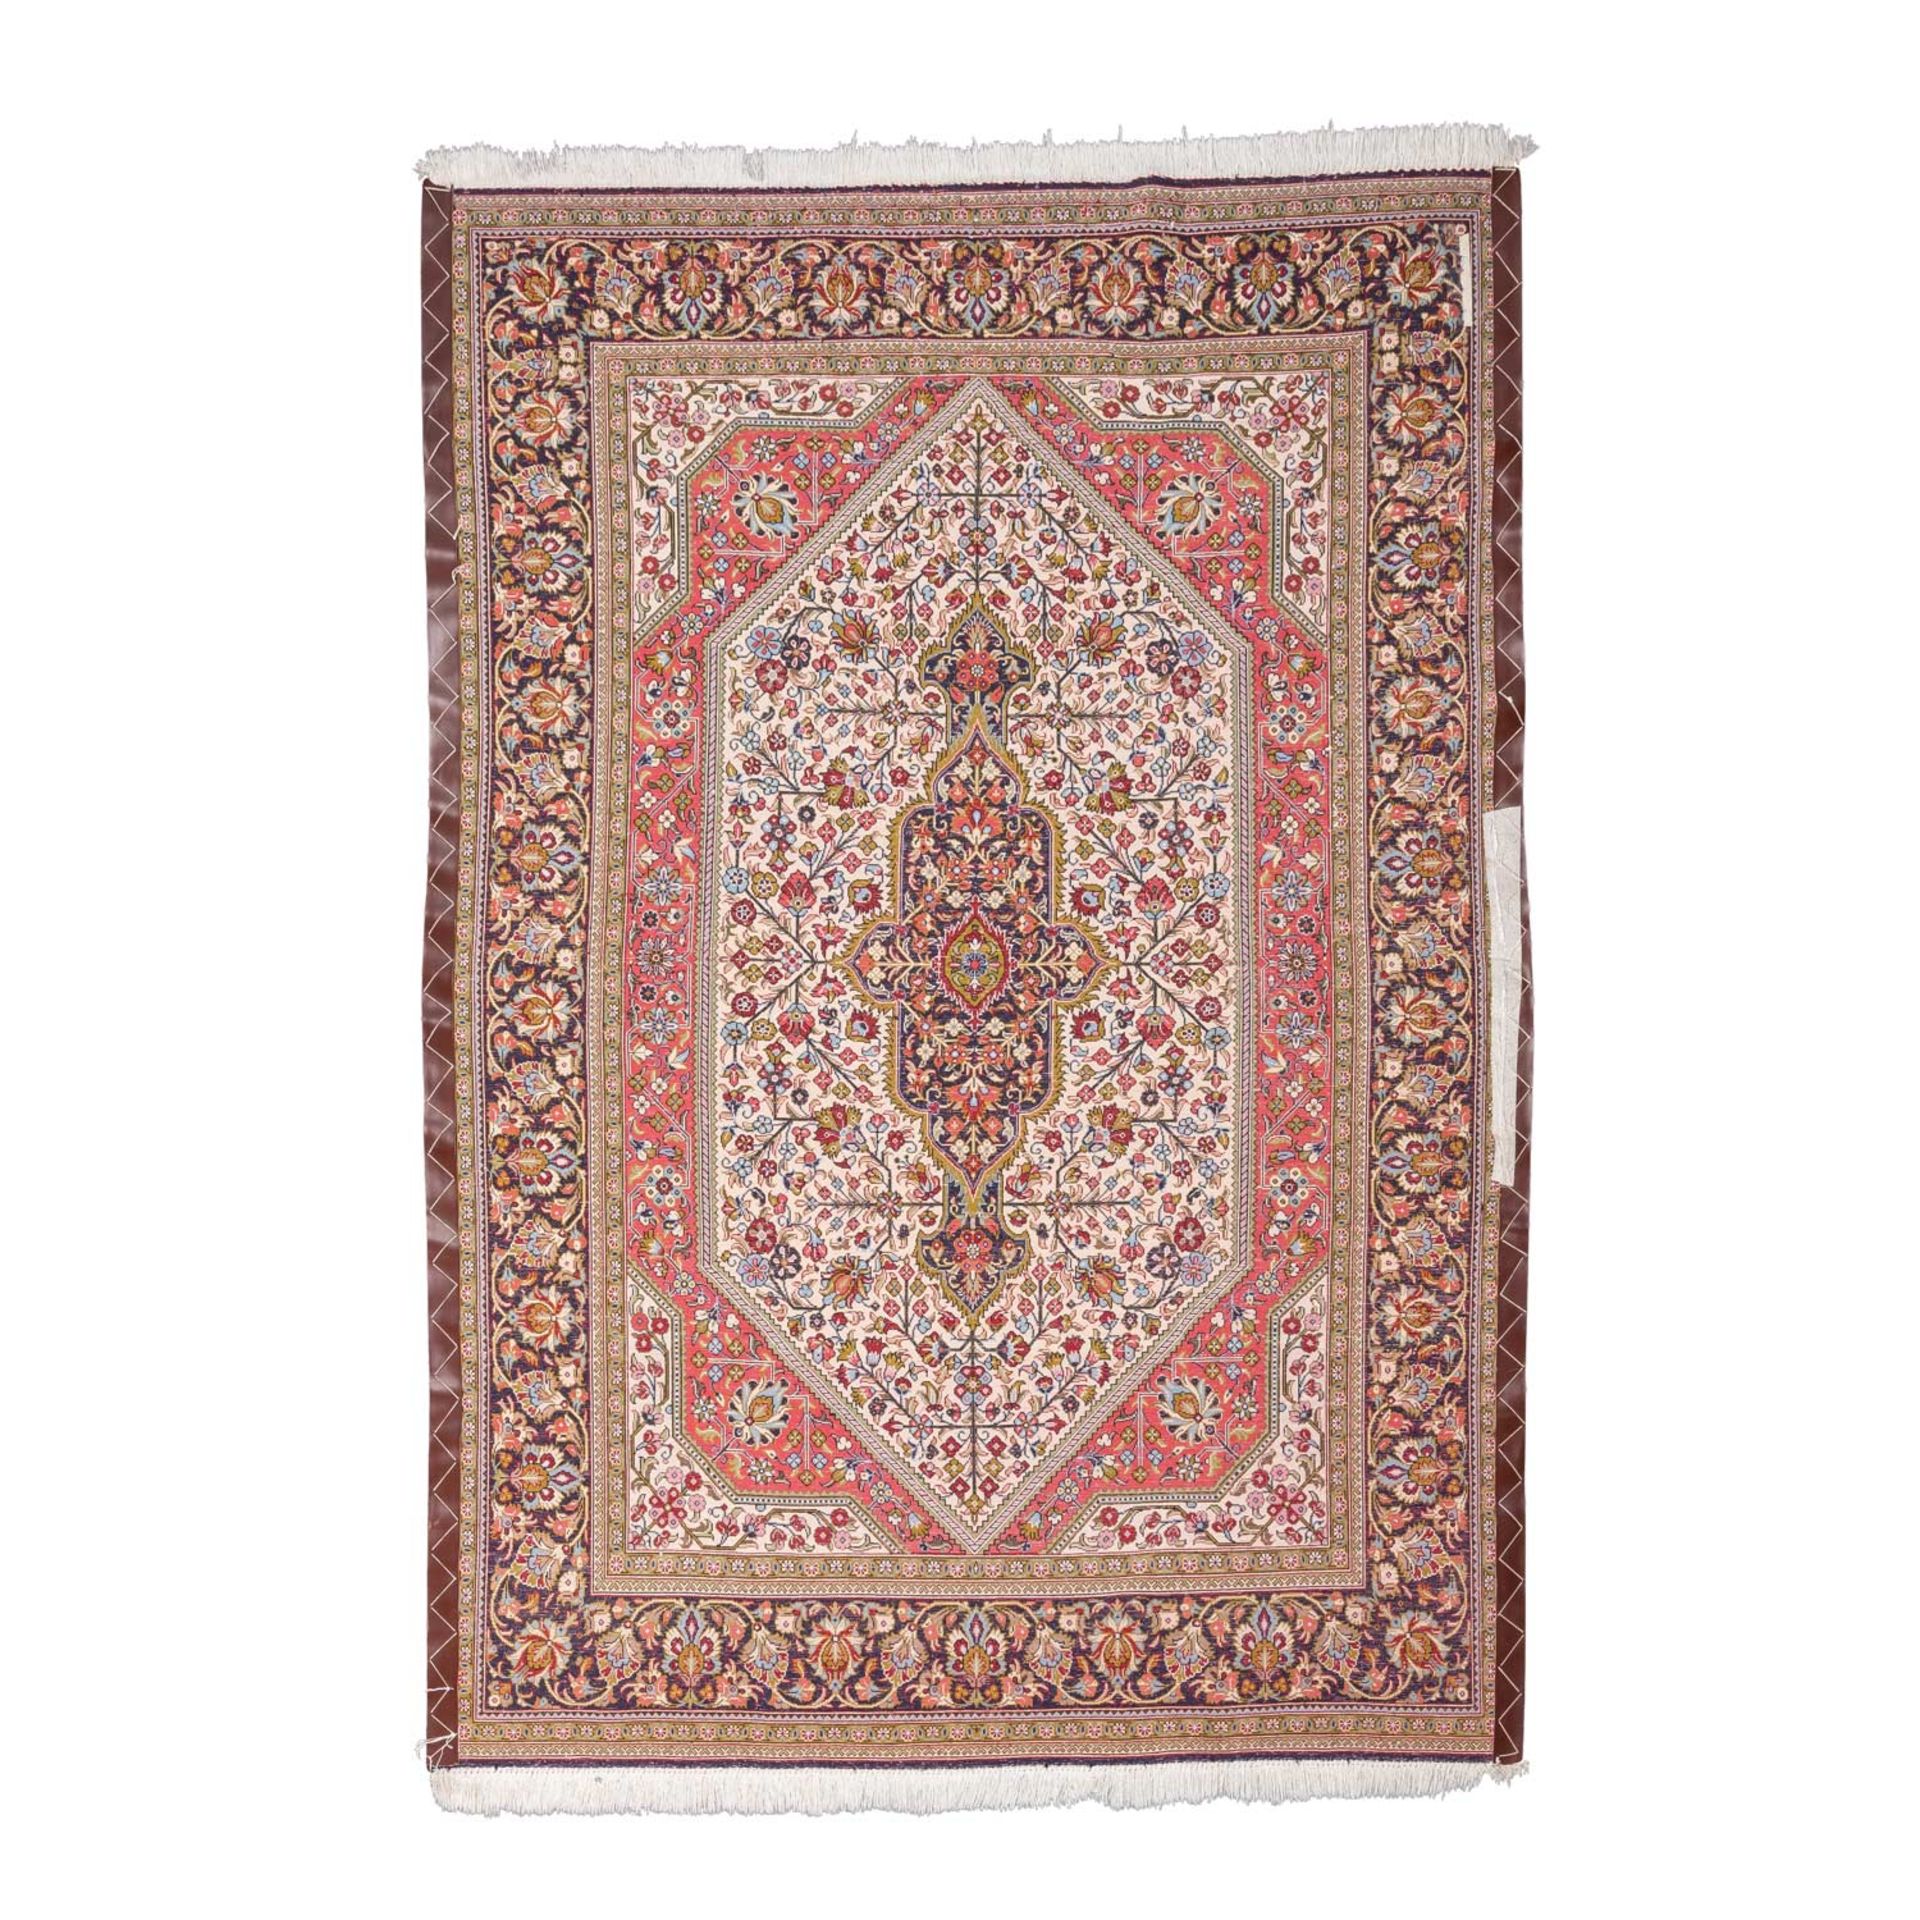 Orientteppich aus Korkwolle. GHOM/PERSIEN, 20. Jh., ca. 210x142 cm. - Bild 2 aus 5